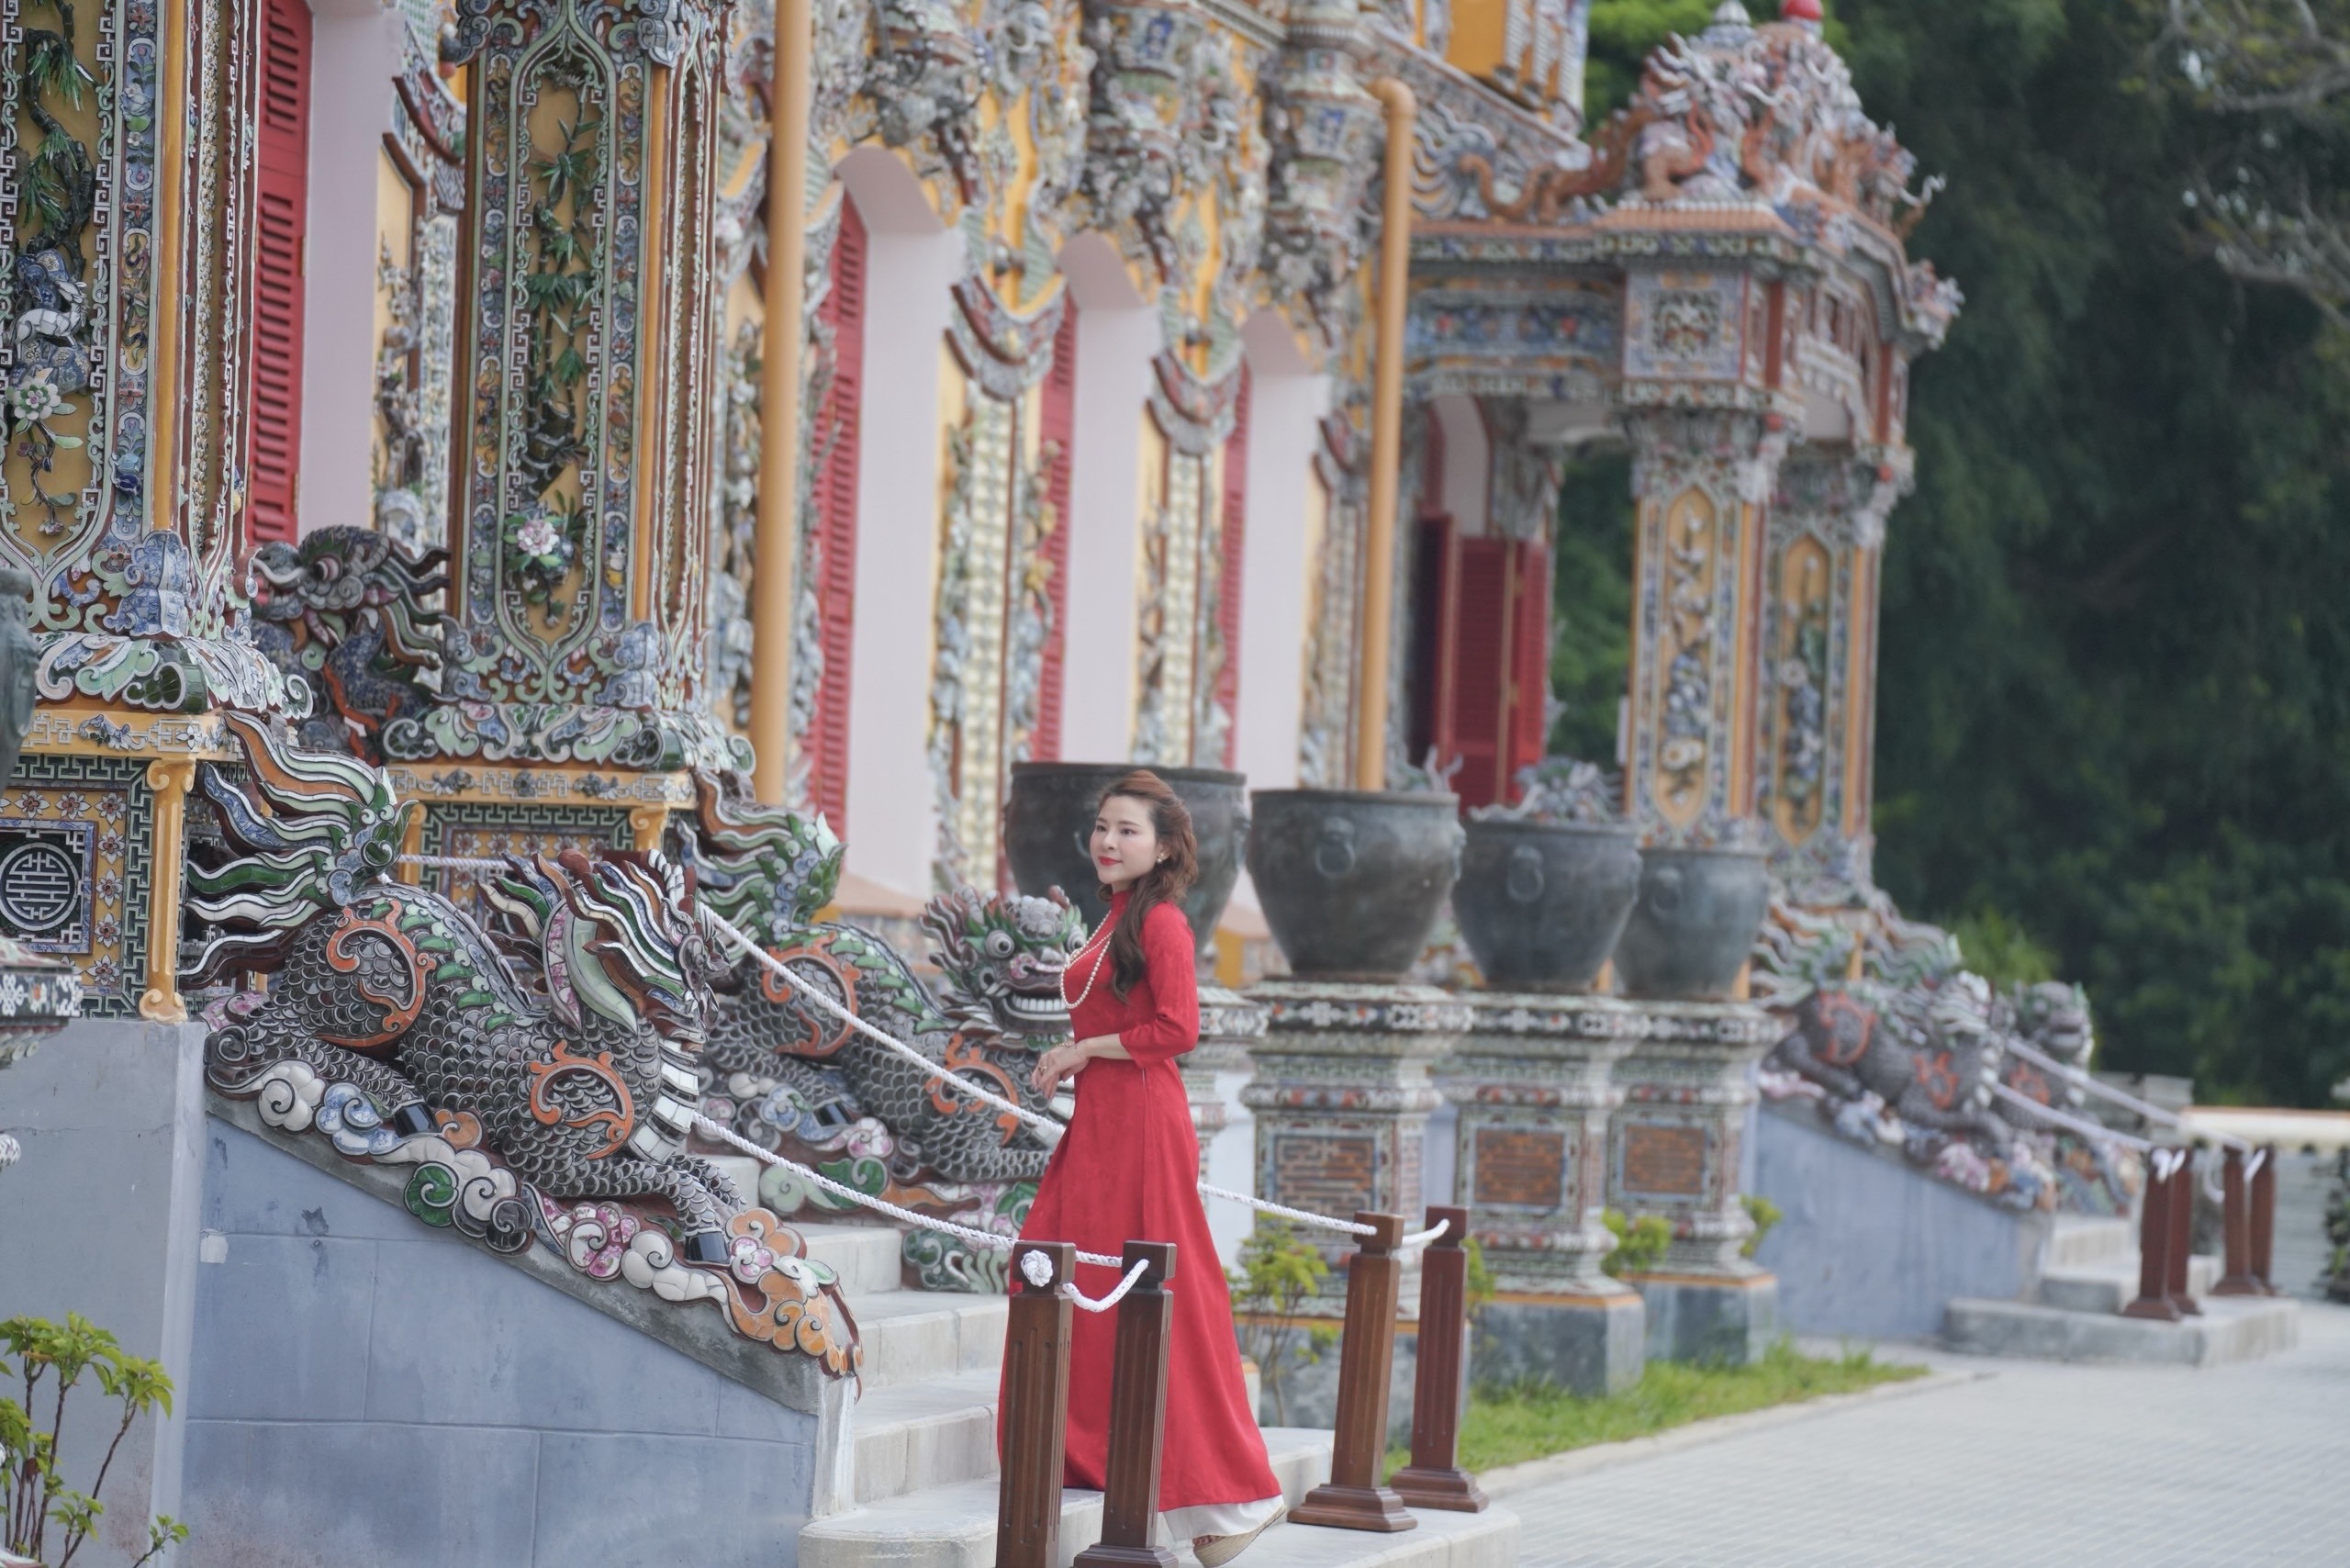 Tham quan điện Kiến Trung, ngỡ ngàng trước vẻ đẹp uy nghi, tráng lệ nơi cố đô Huế